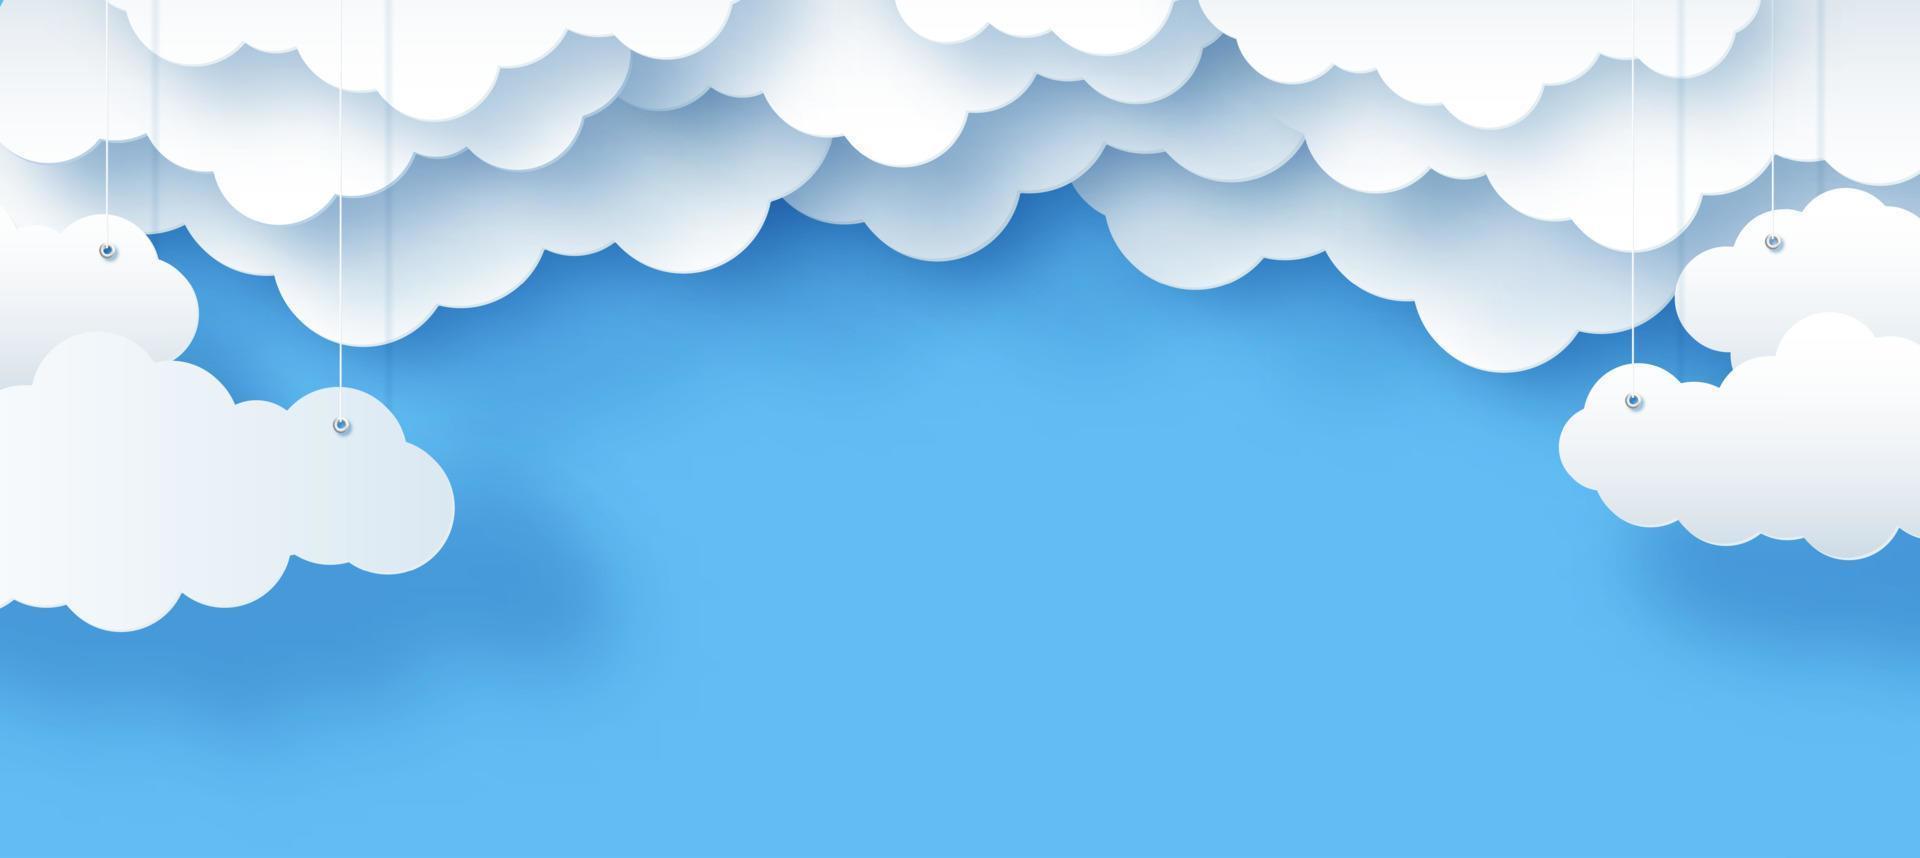 nuages et étoiles, le soleil sur fond bleu, illustration vectorielle pour enfants du ciel dans un style décoratif en papier, 3d vecteur